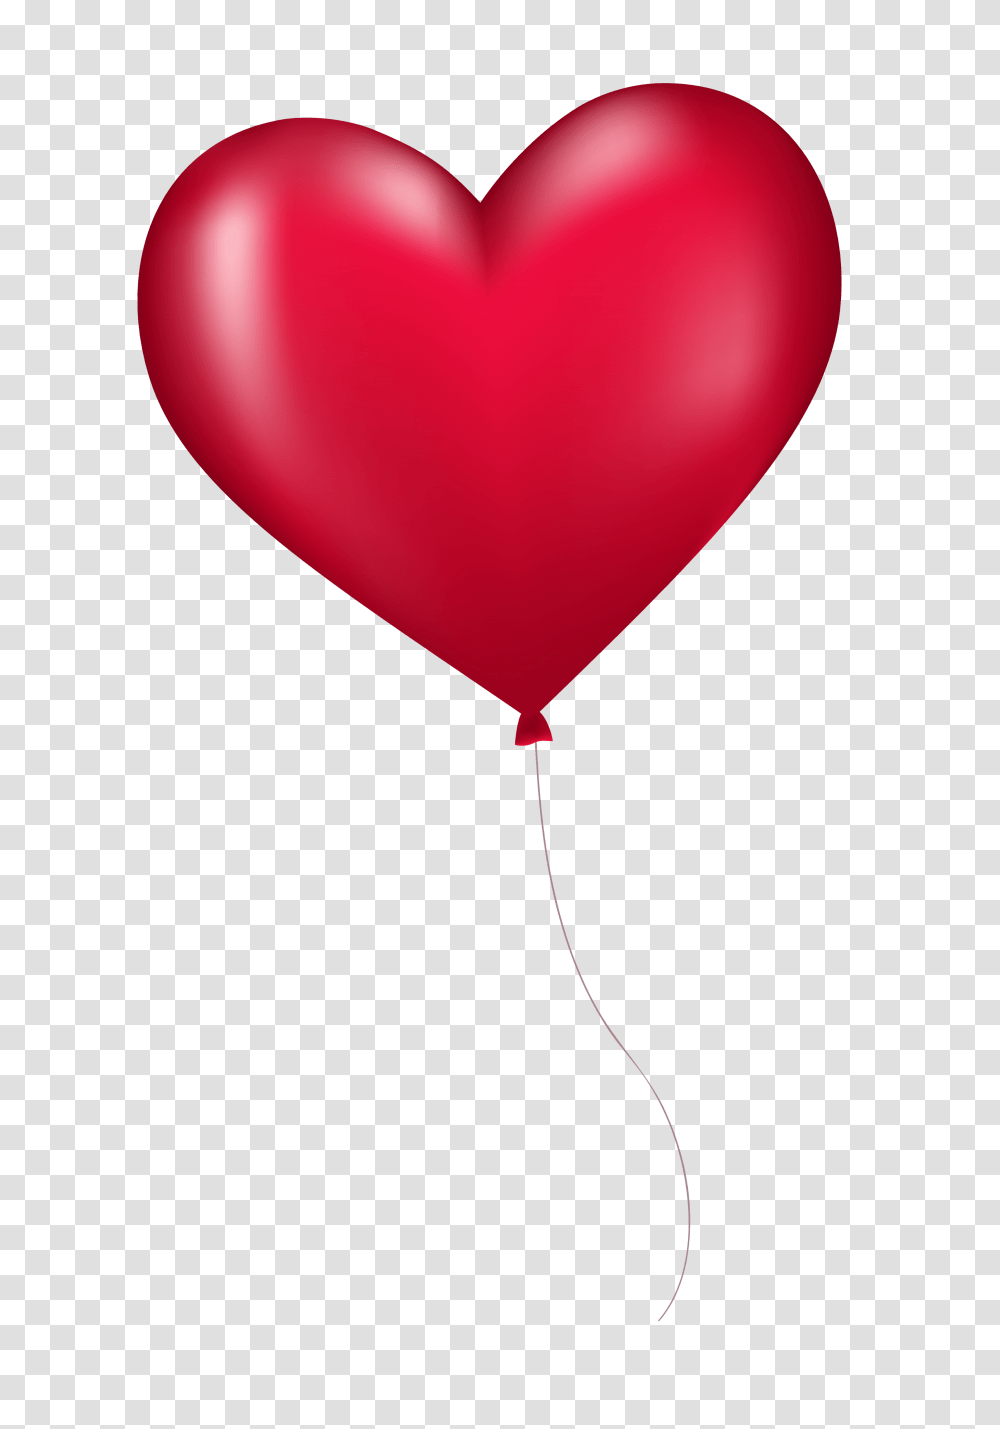 Download Hd Heart Balloon Image Best Heart Shape Balloon Transparent Png